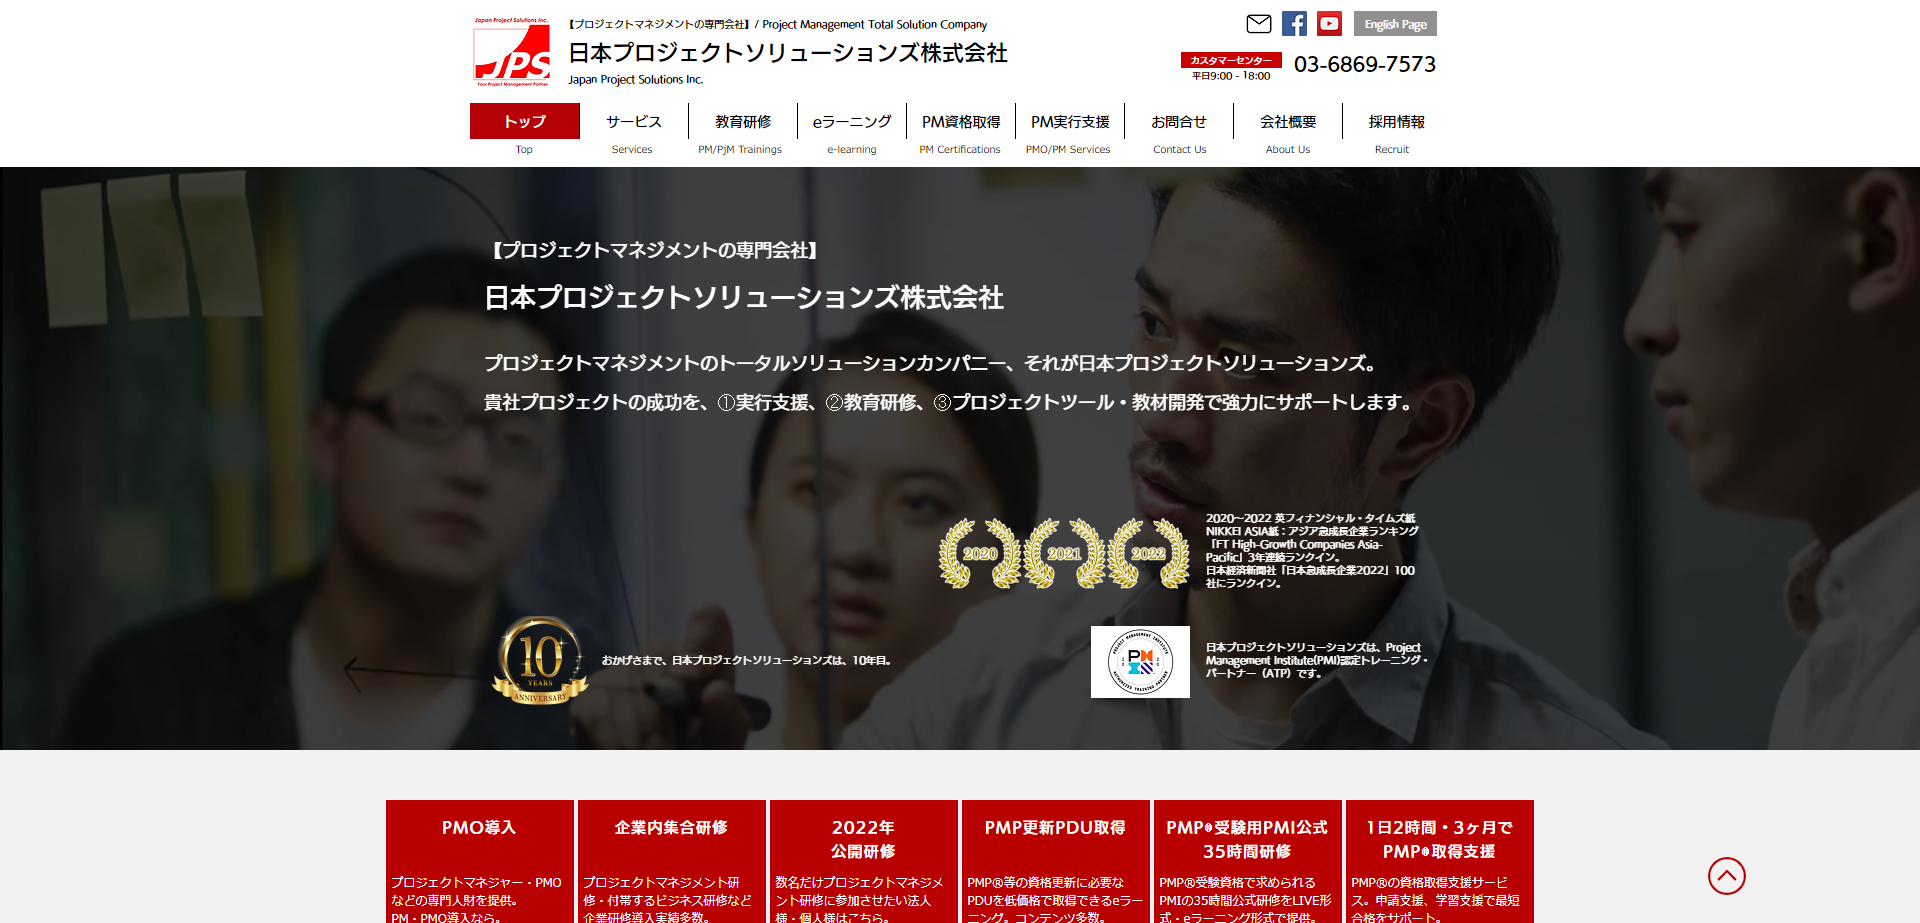 日本プロジェクトソリューションズ株式会社の日本プロジェクトソリューションズサービス